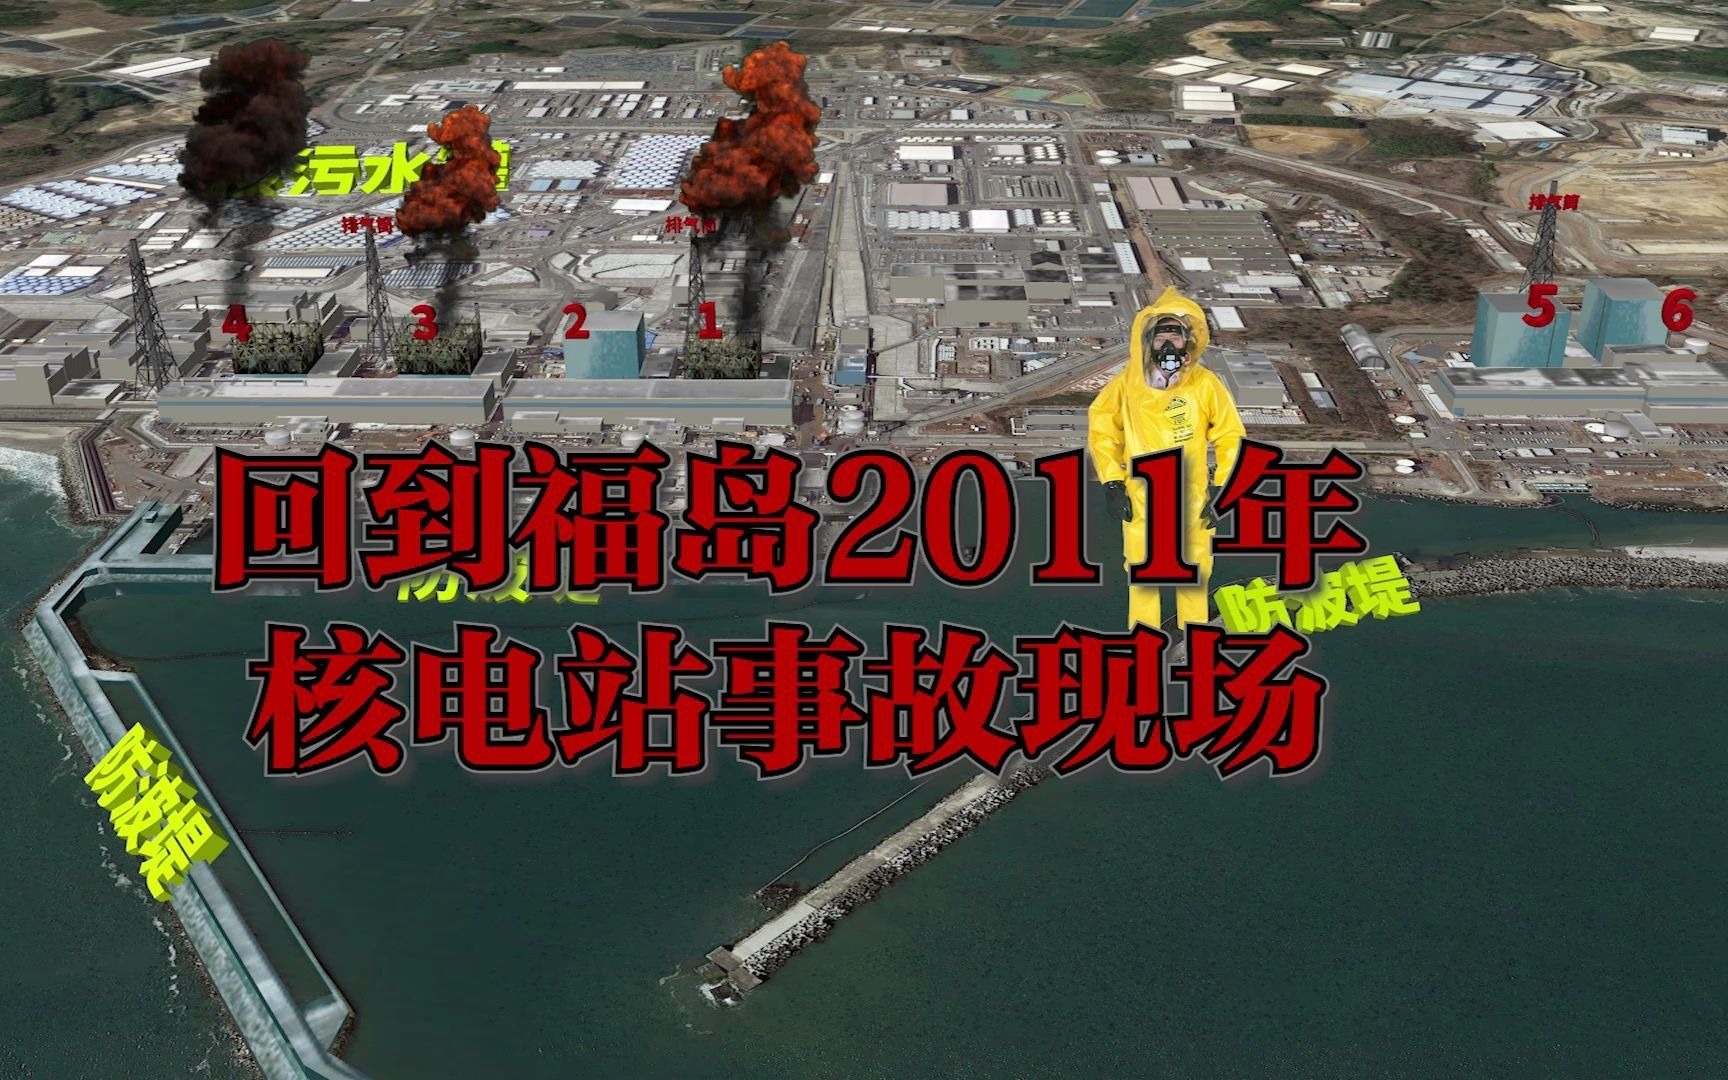 回到2011年日本福岛第一核电站爆炸事故现场了解事故发生经过